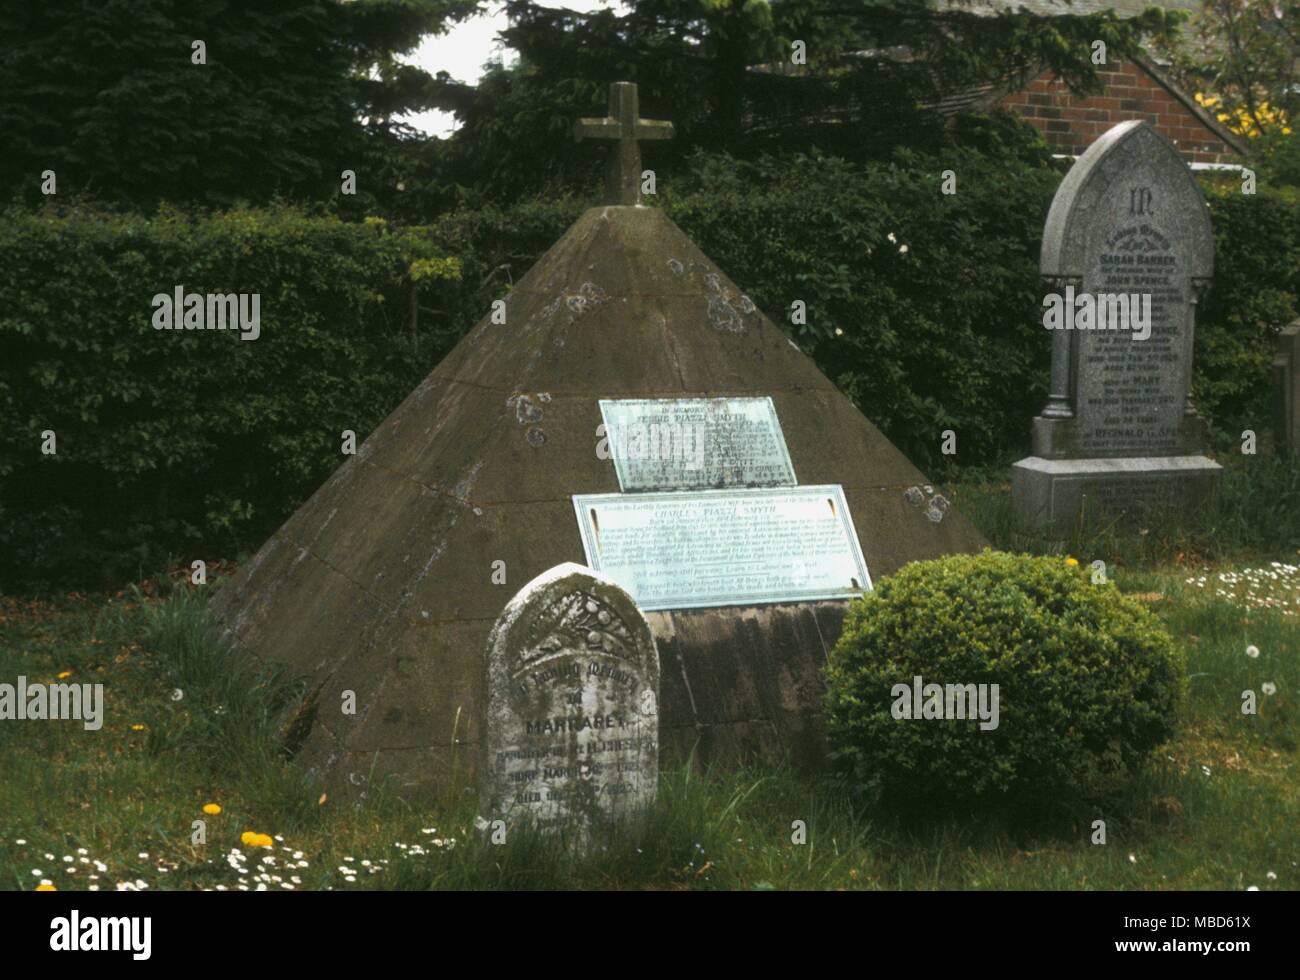 Friedhof Symbole Sharow Grab von piazzi Smythe im Kirchhof ist hier eine pyramidenförmige Grab Marker von Charles Piazzi Smyth, der bekannte Astronom Royal von Schottland und Gründer von pyramidology Stockfoto